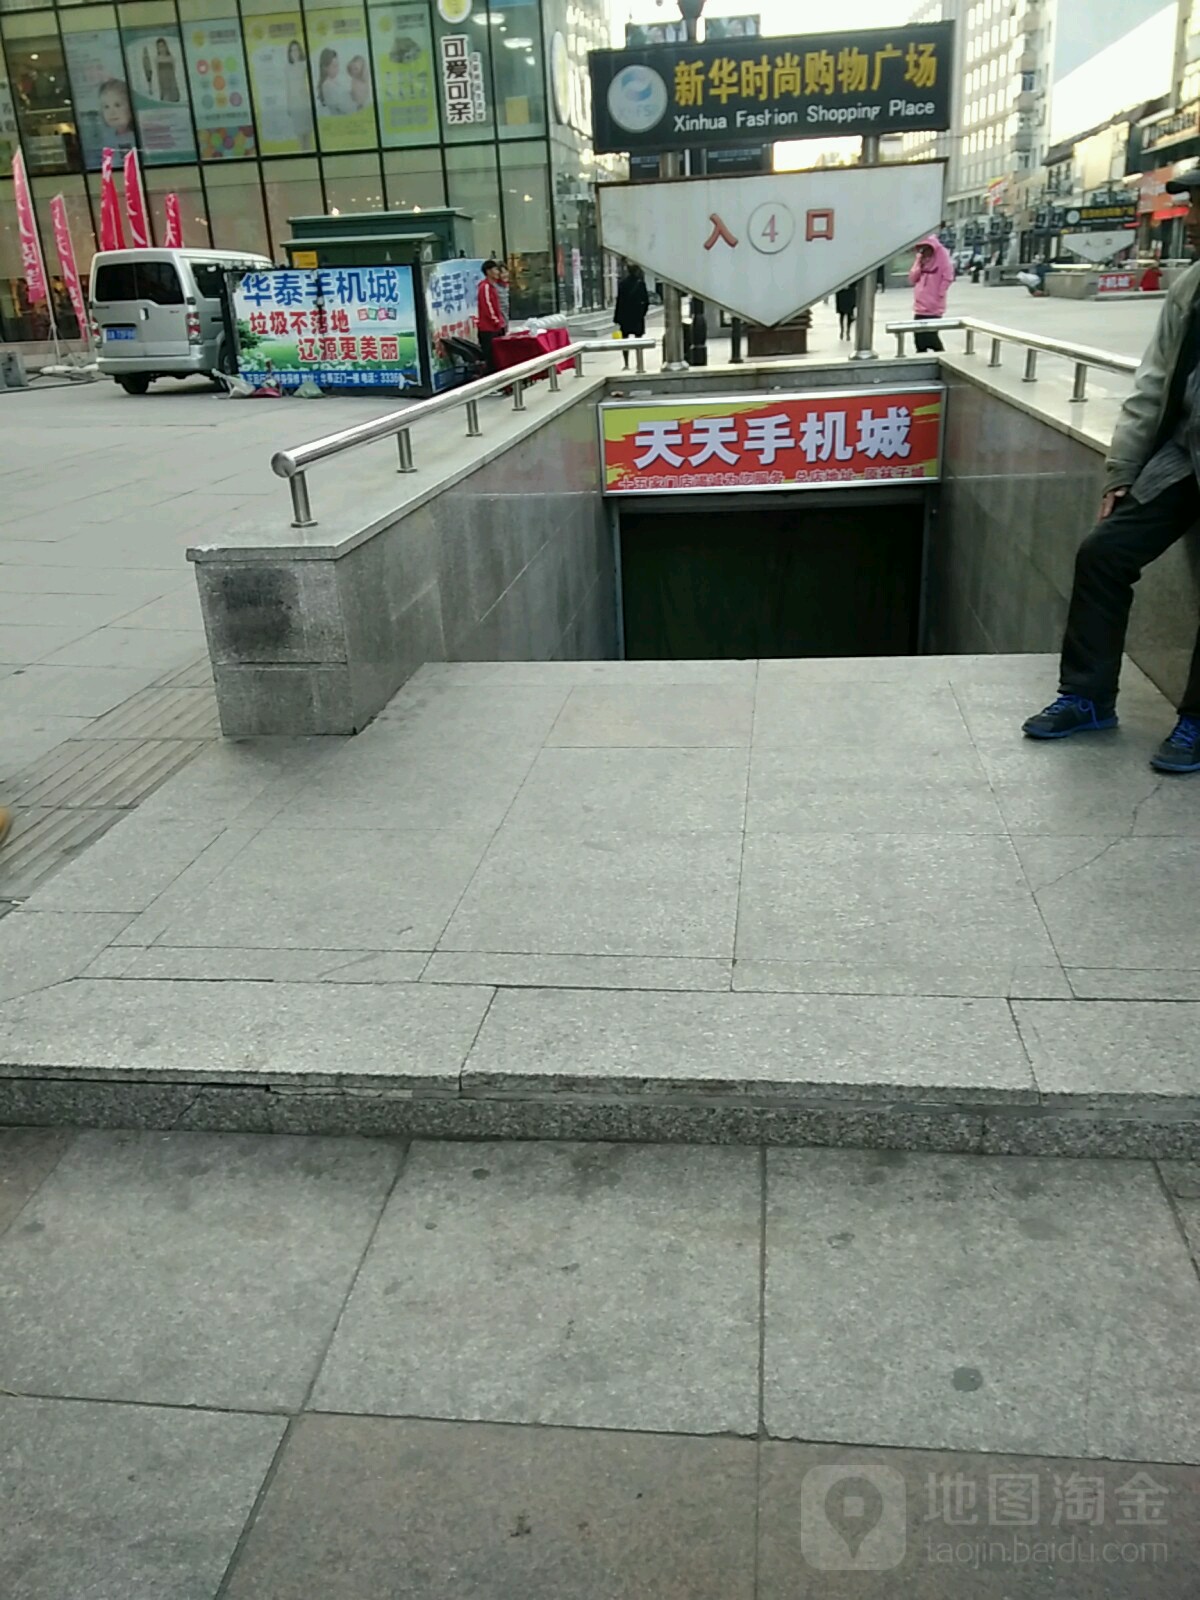 新华村时尚购物广场(吉光路店)